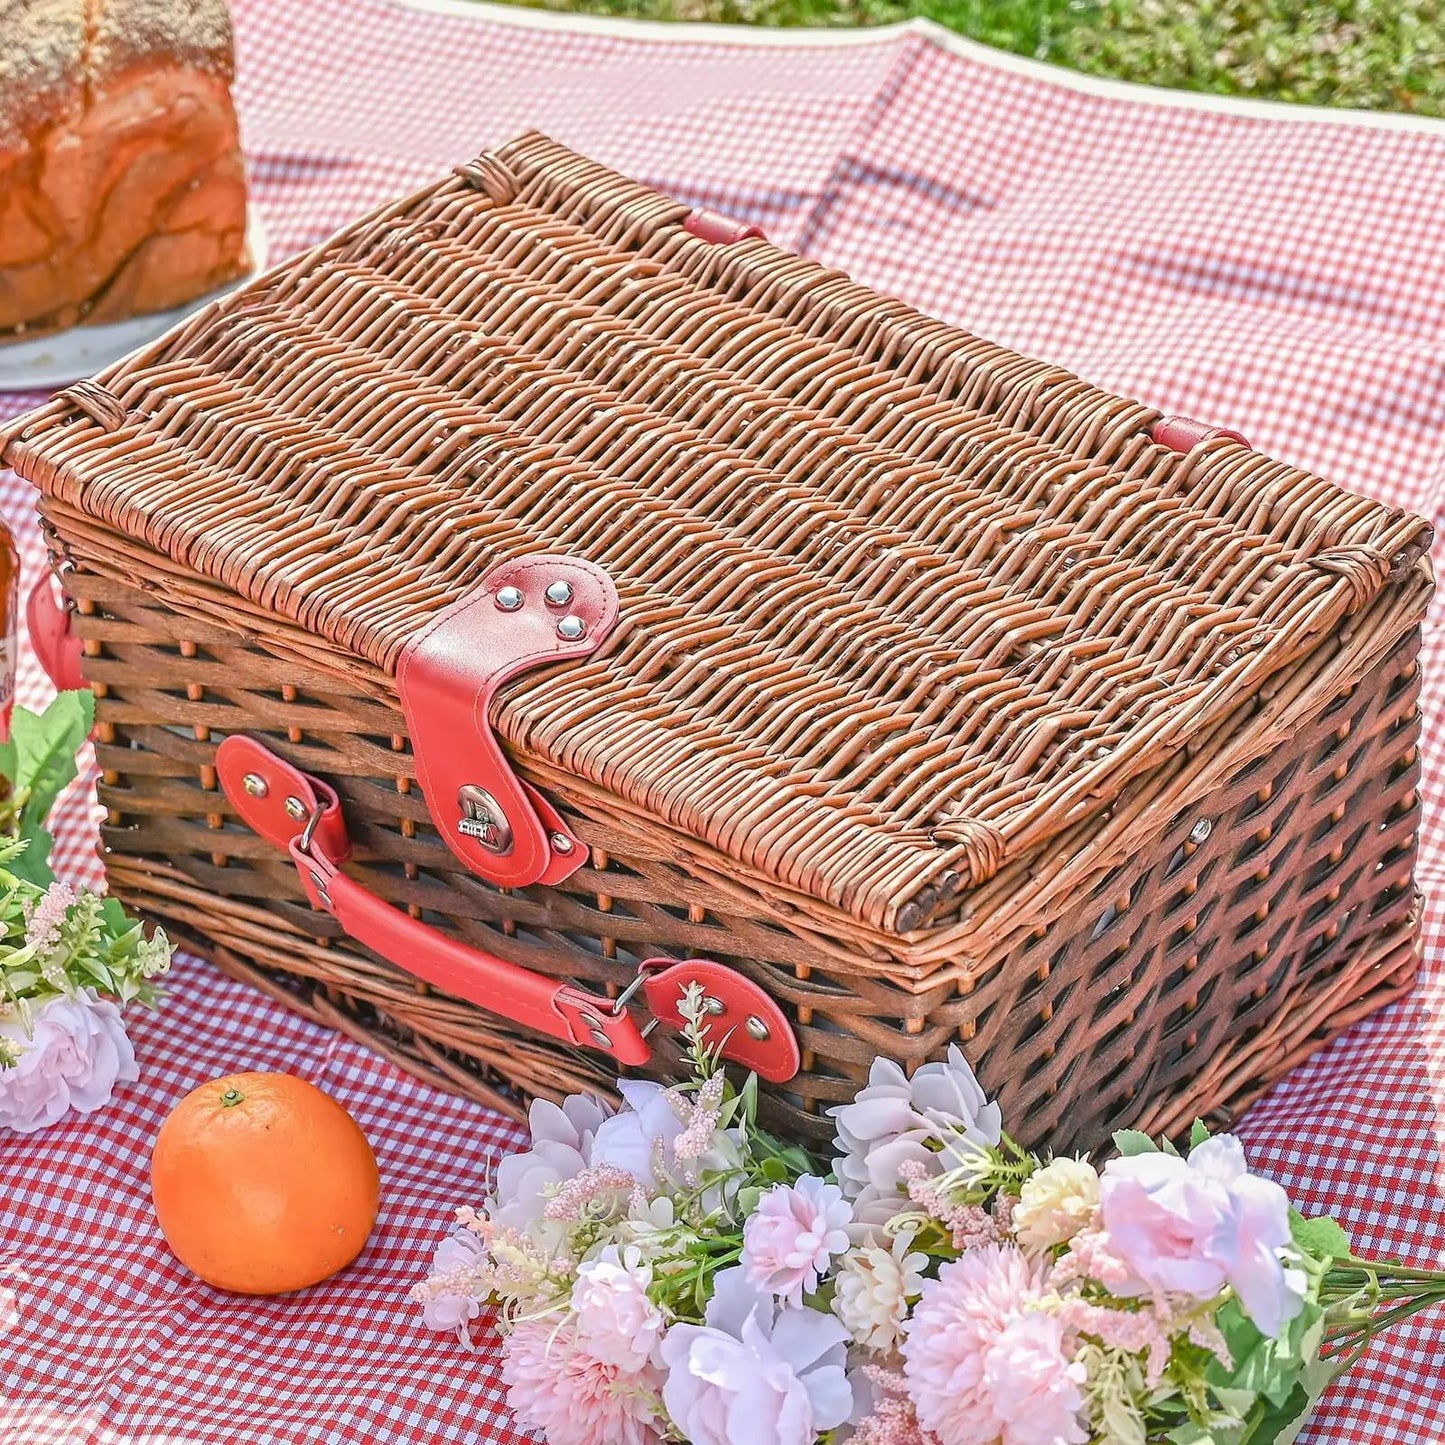 Wicker picnic set for 4 Hedgehog Decor